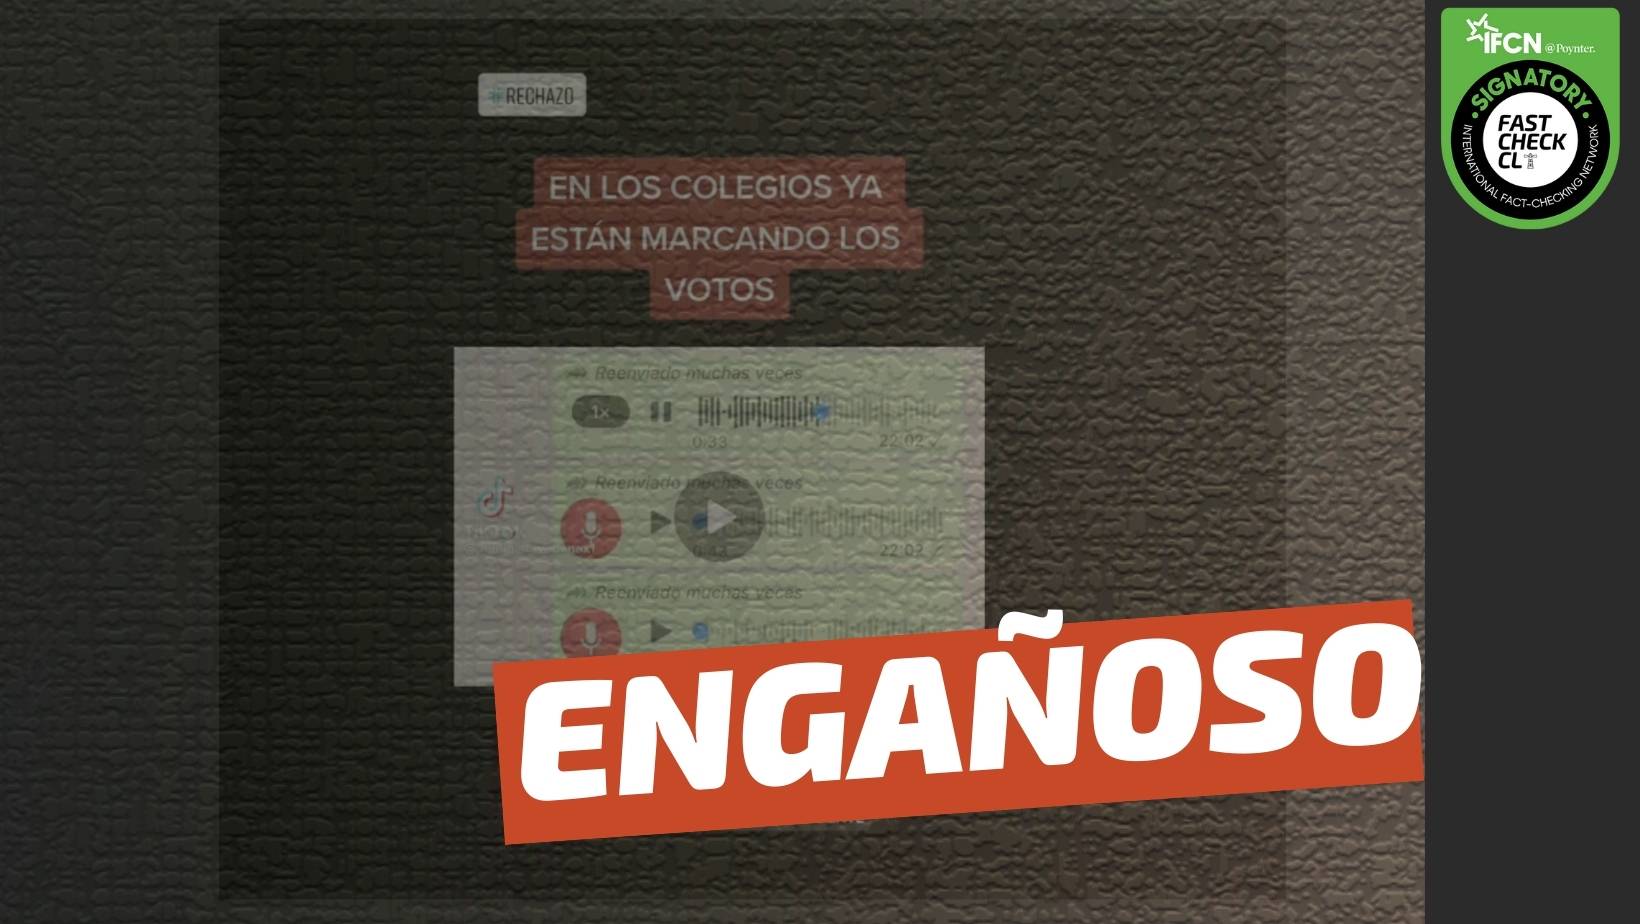 You are currently viewing (Video) “En los colegios ya están marcando los votos”: #Engañoso